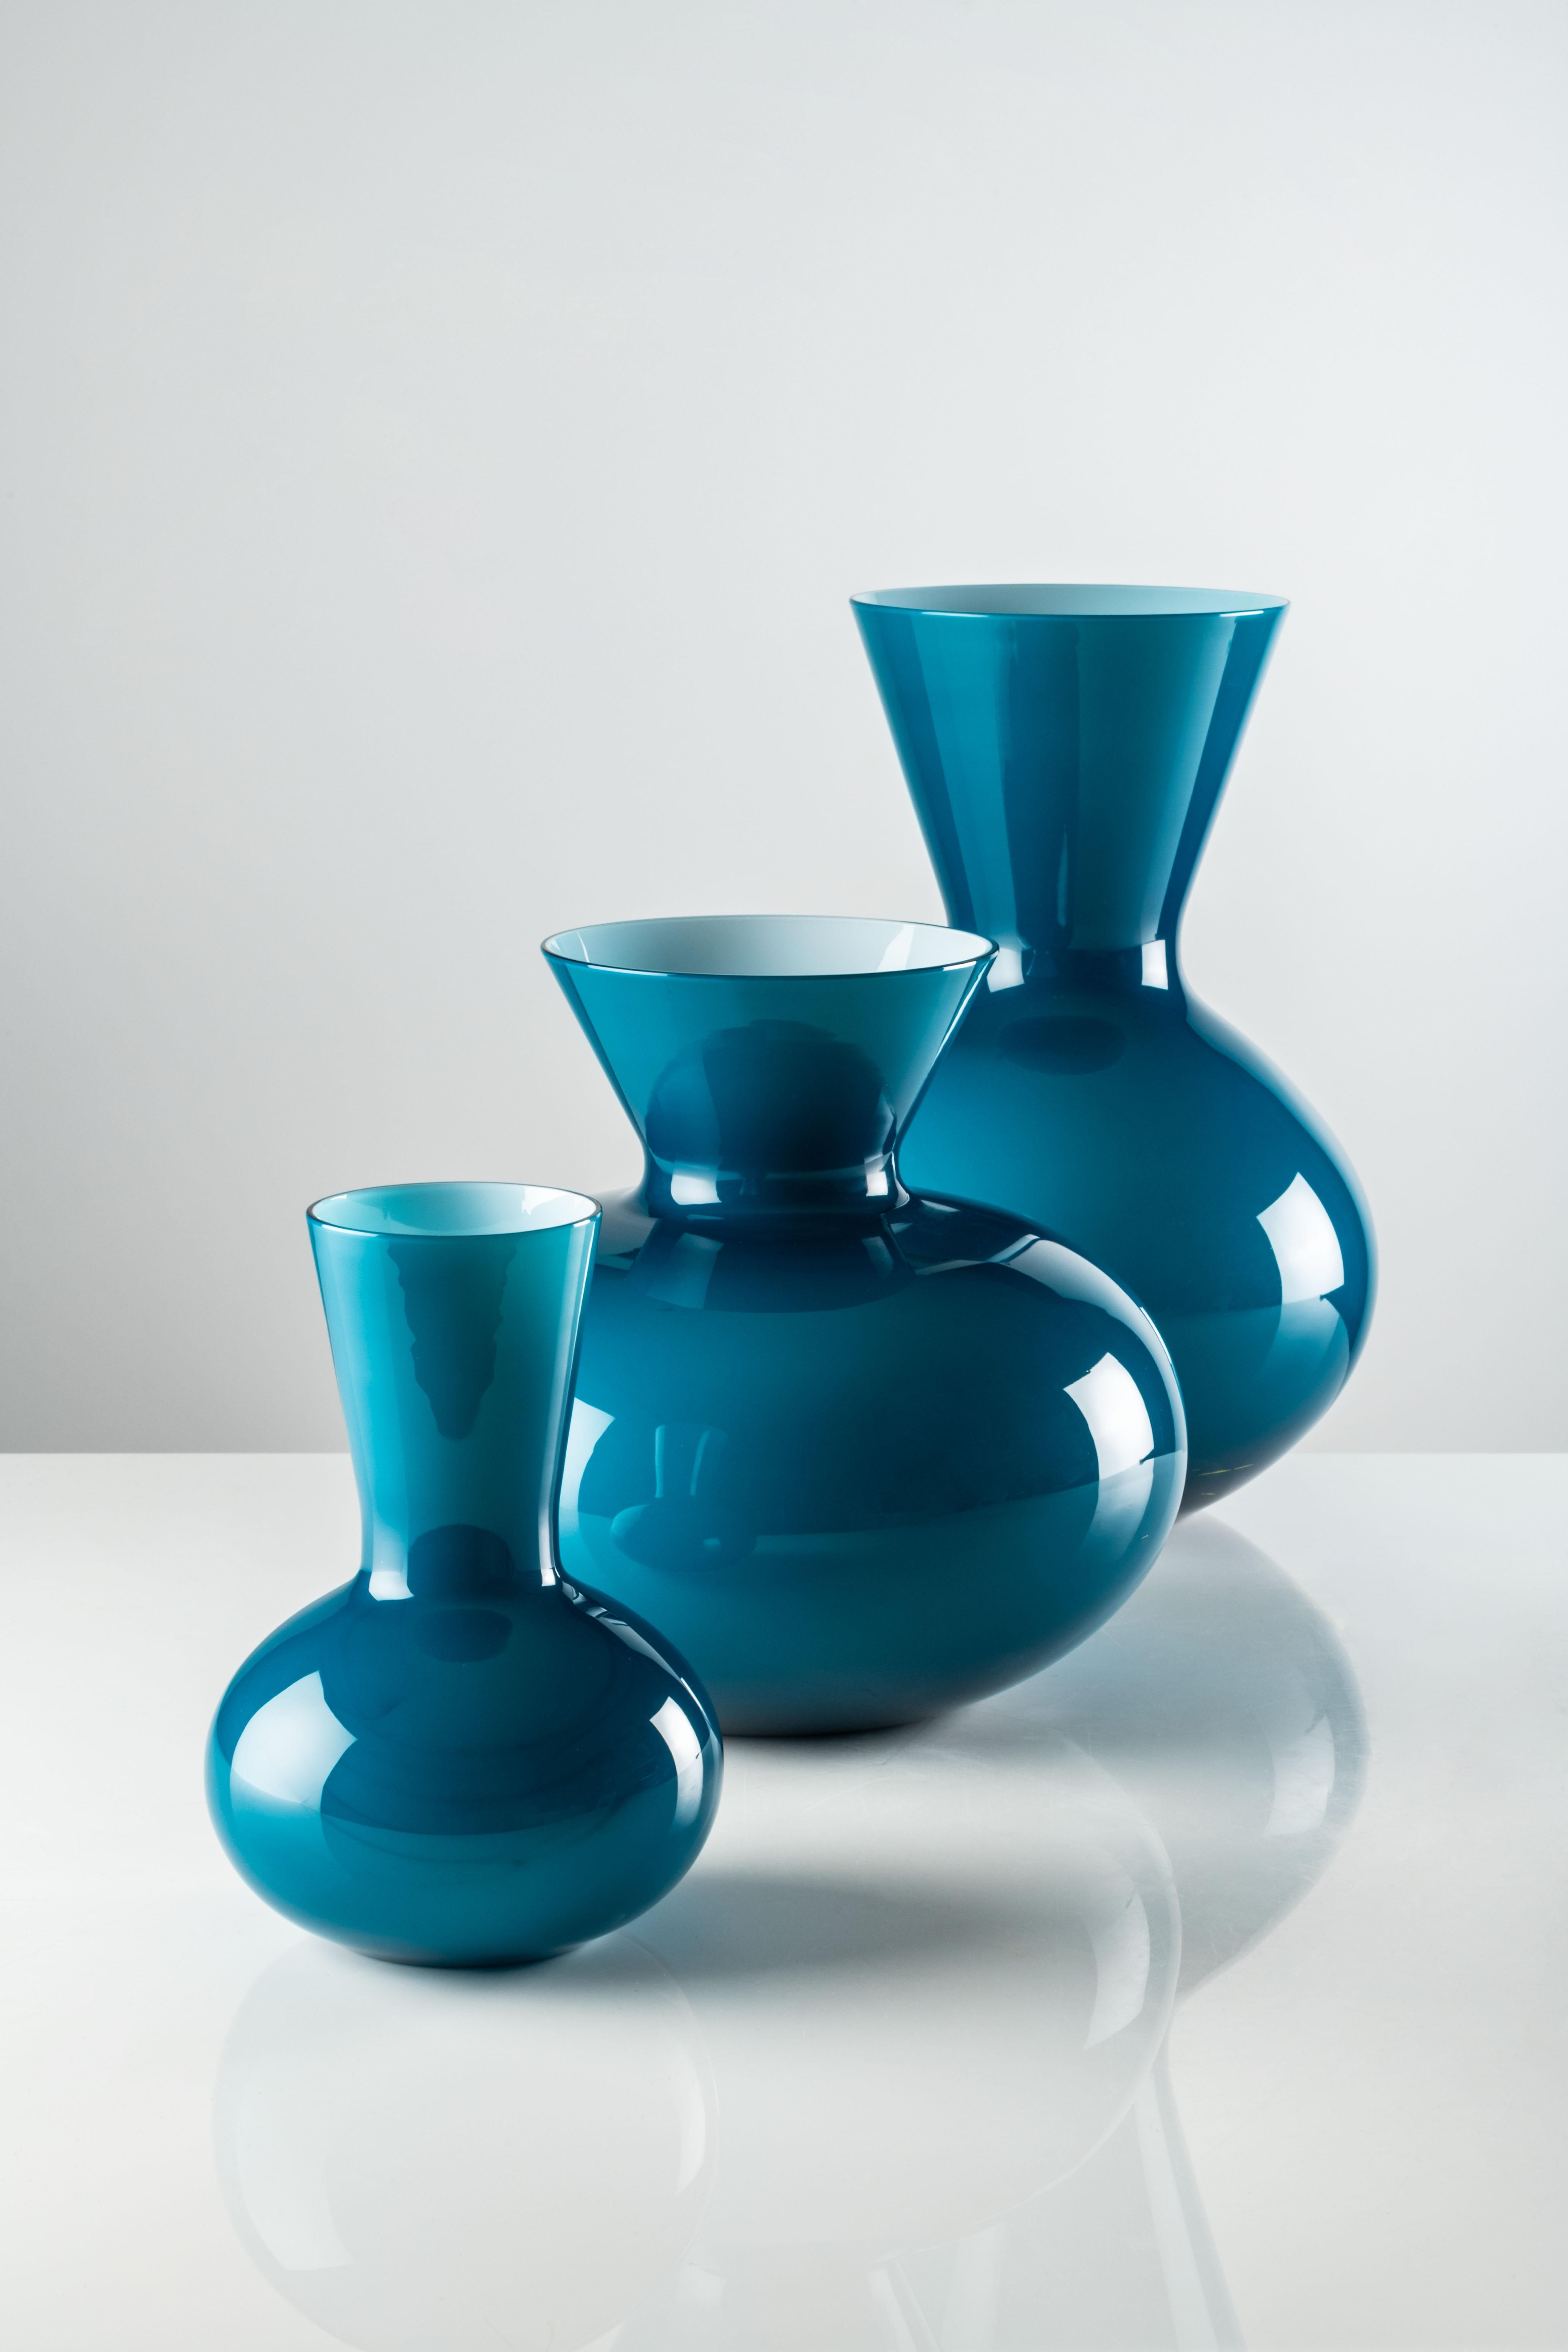 Große Vase Idria aus Murano-Glas von Venini, Horizont. Das antike griechische Wassergefäß häutet sich, während die Terrakotta dem Glas weicht - dank Venini. Sein Design erinnert an vergangene Zeiten und Rhythmen und erweckt sie zu neuem Leben: